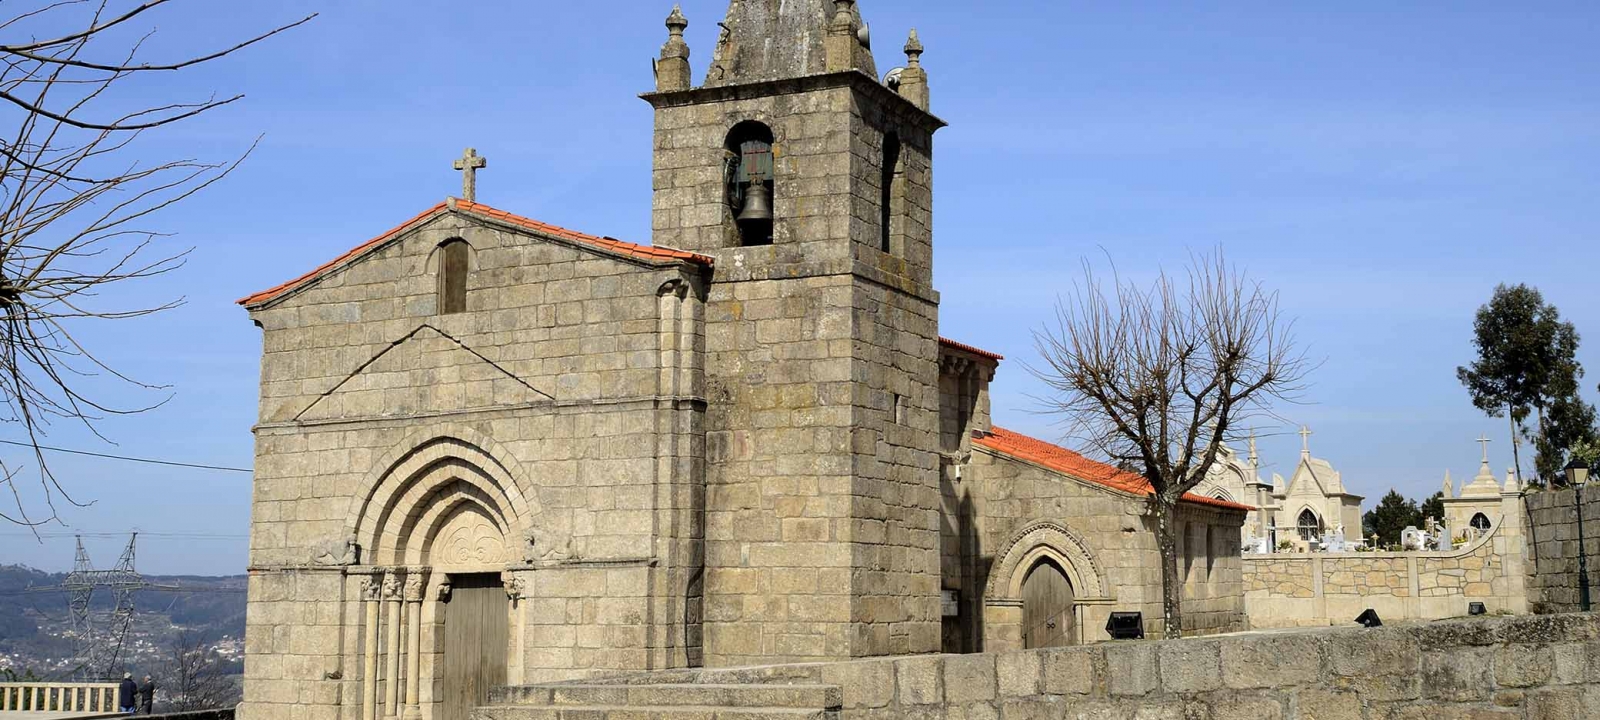 Igreja de Santa Maria Maior de Tarouquela, em Cinfães